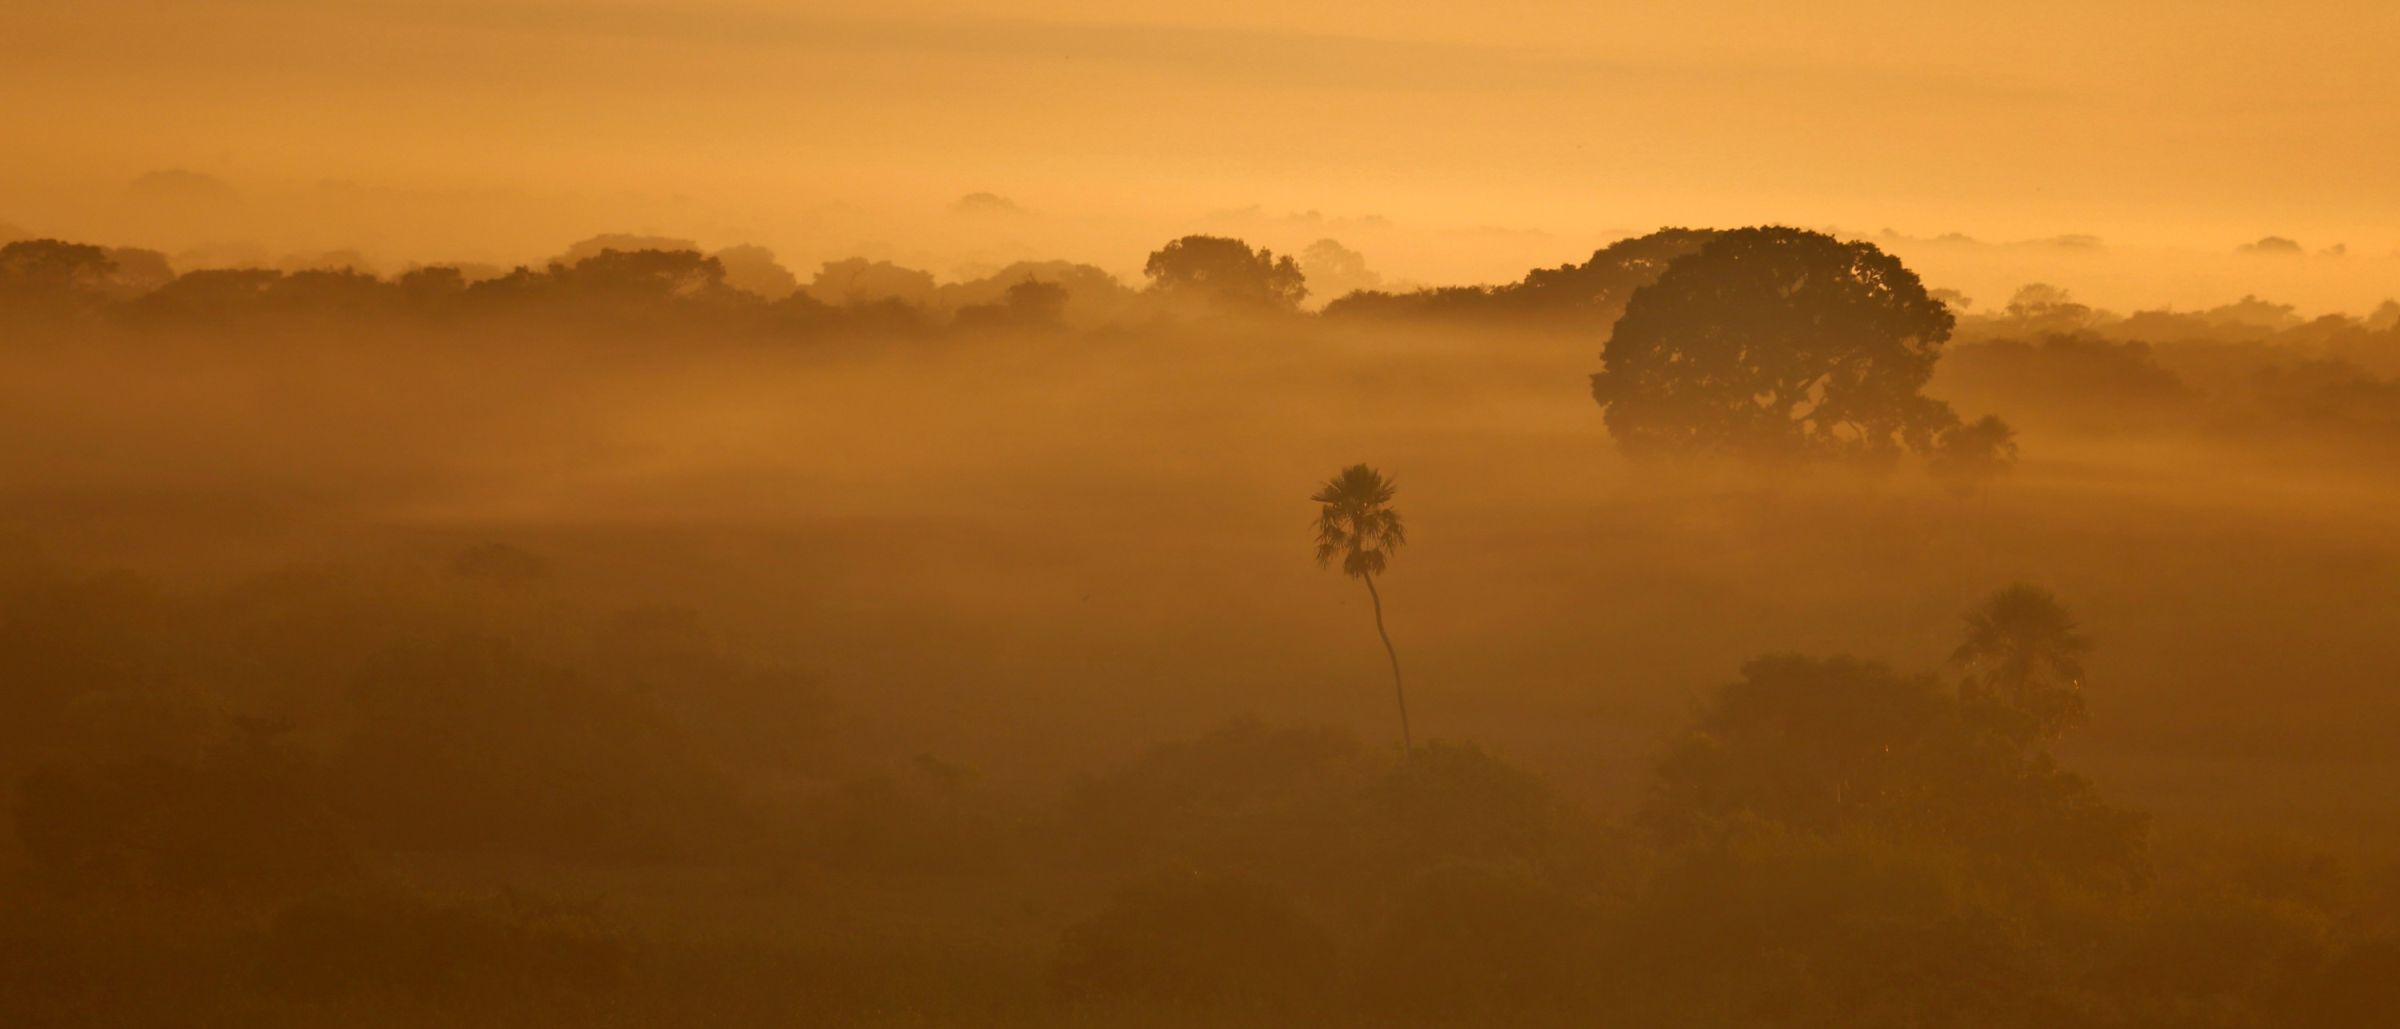 Landschaft im Pantanal